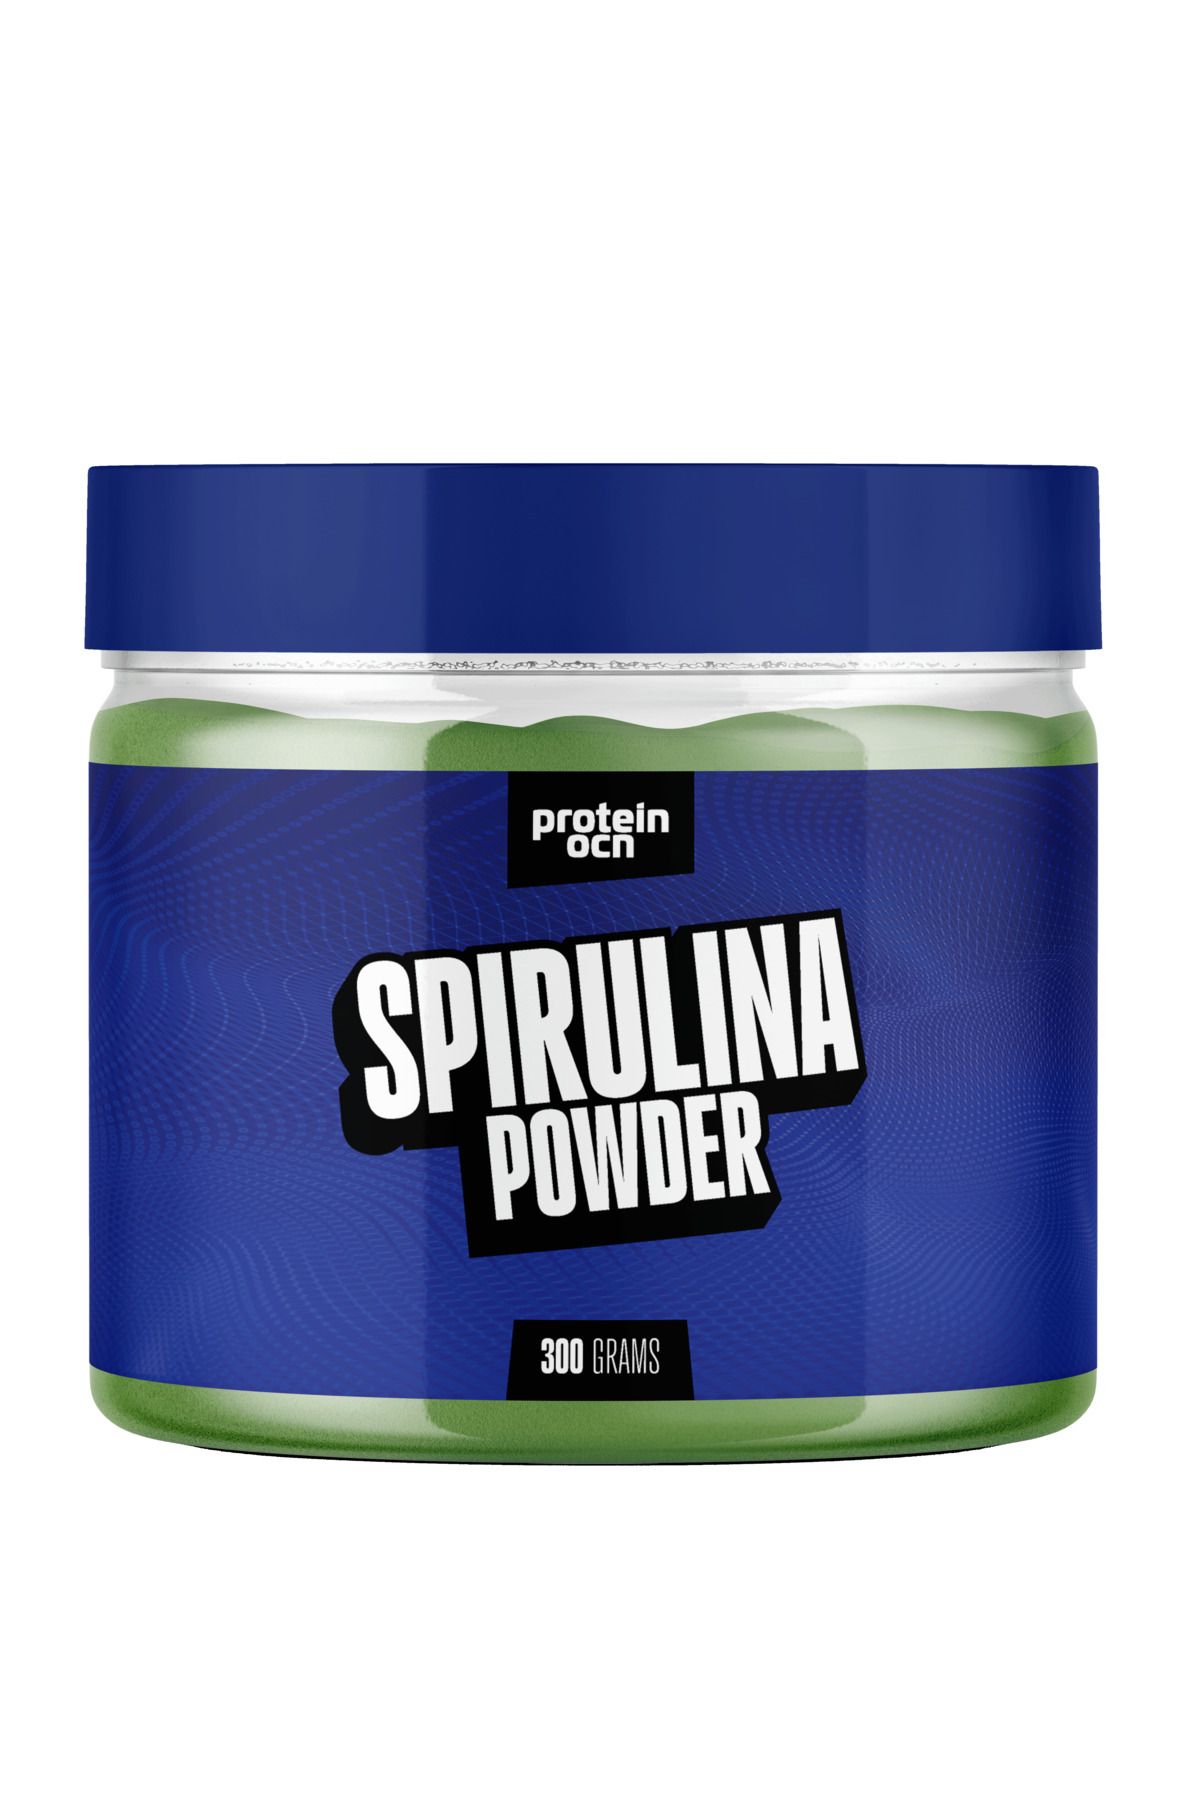 Proteinocean Spirulina Powder - 300g - 30 Servis